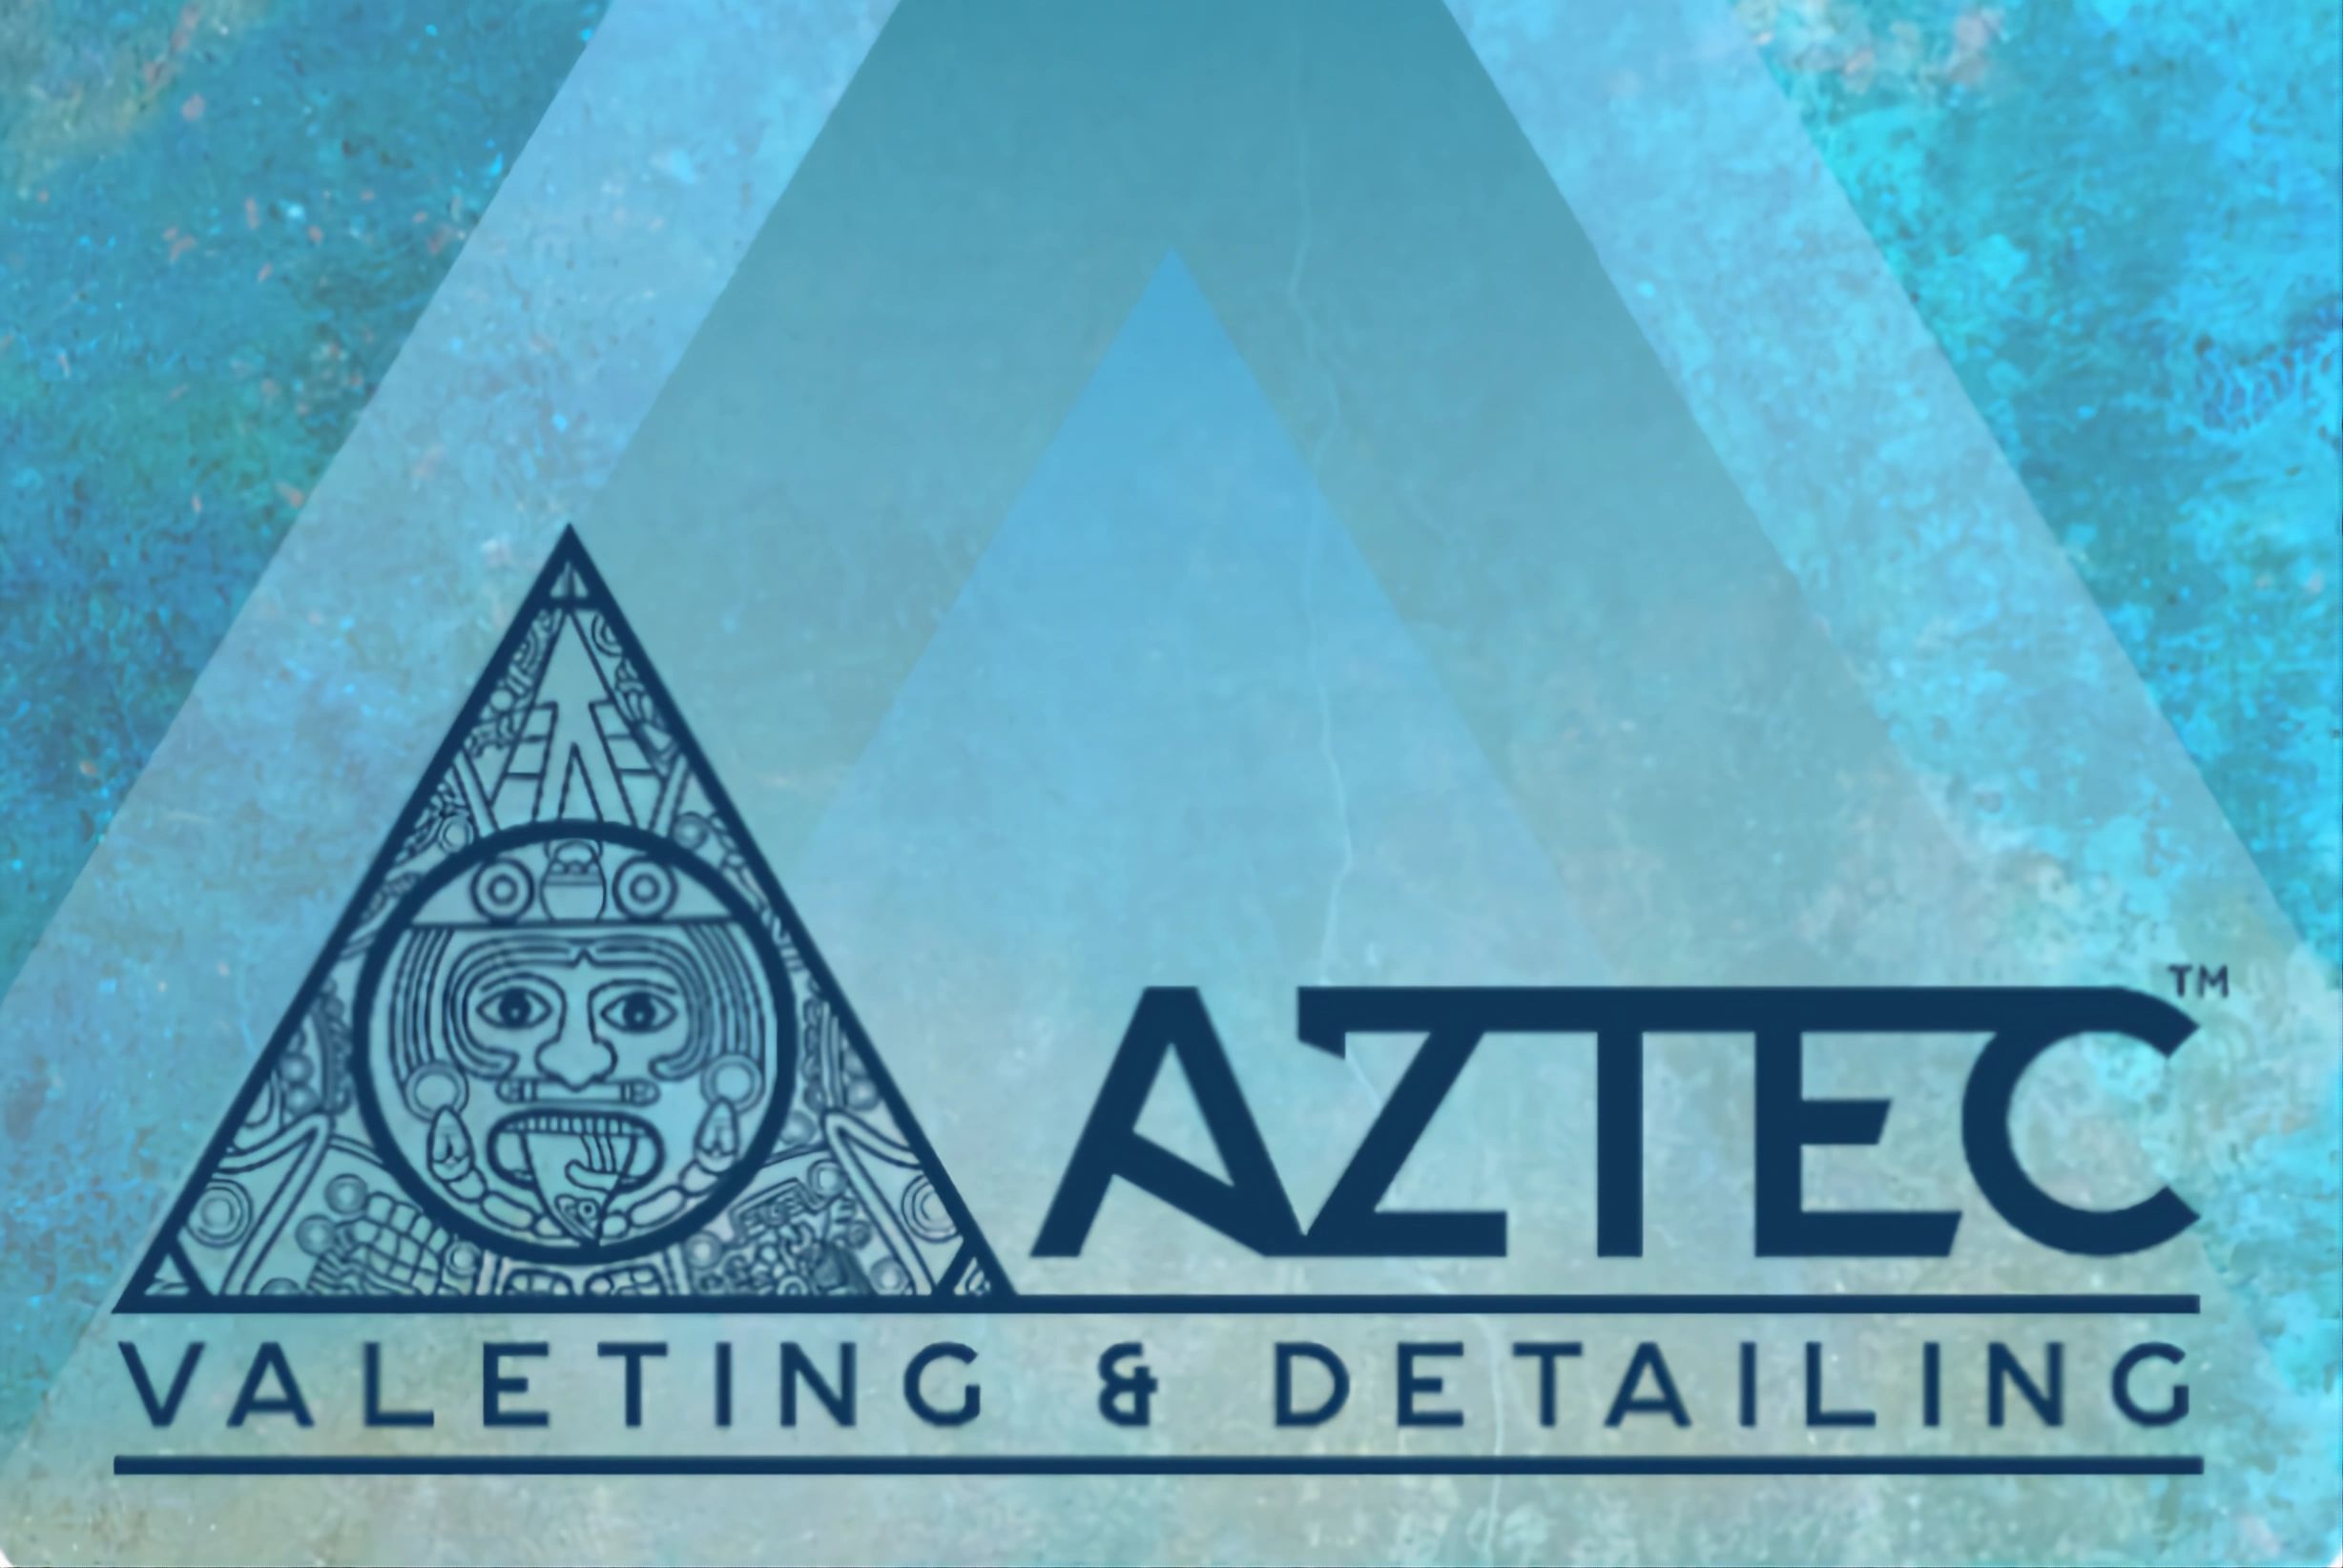 (c) Aztecvaleting.co.uk